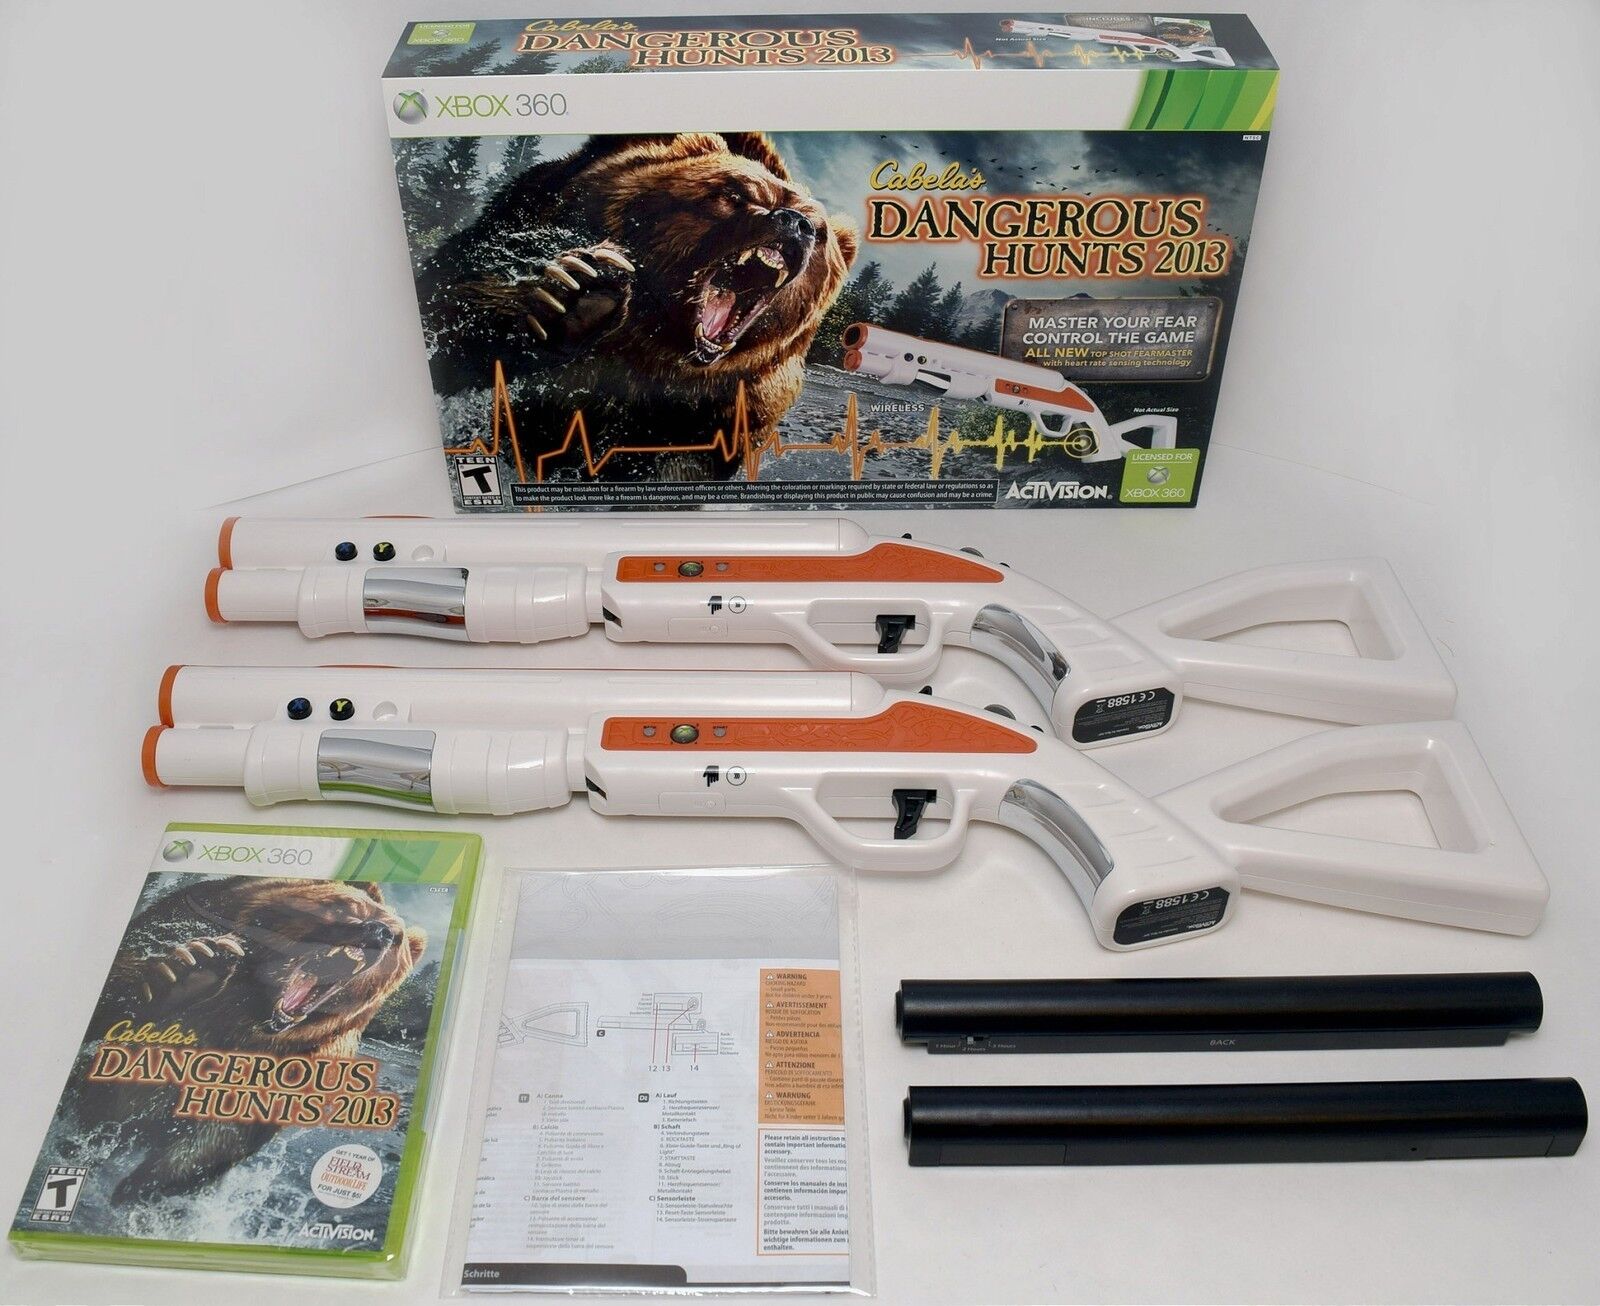 NEW 2-GUN BUNDLE XBox 360 Cabela's Dangerous Hunts 2013 Hunting Game top shot